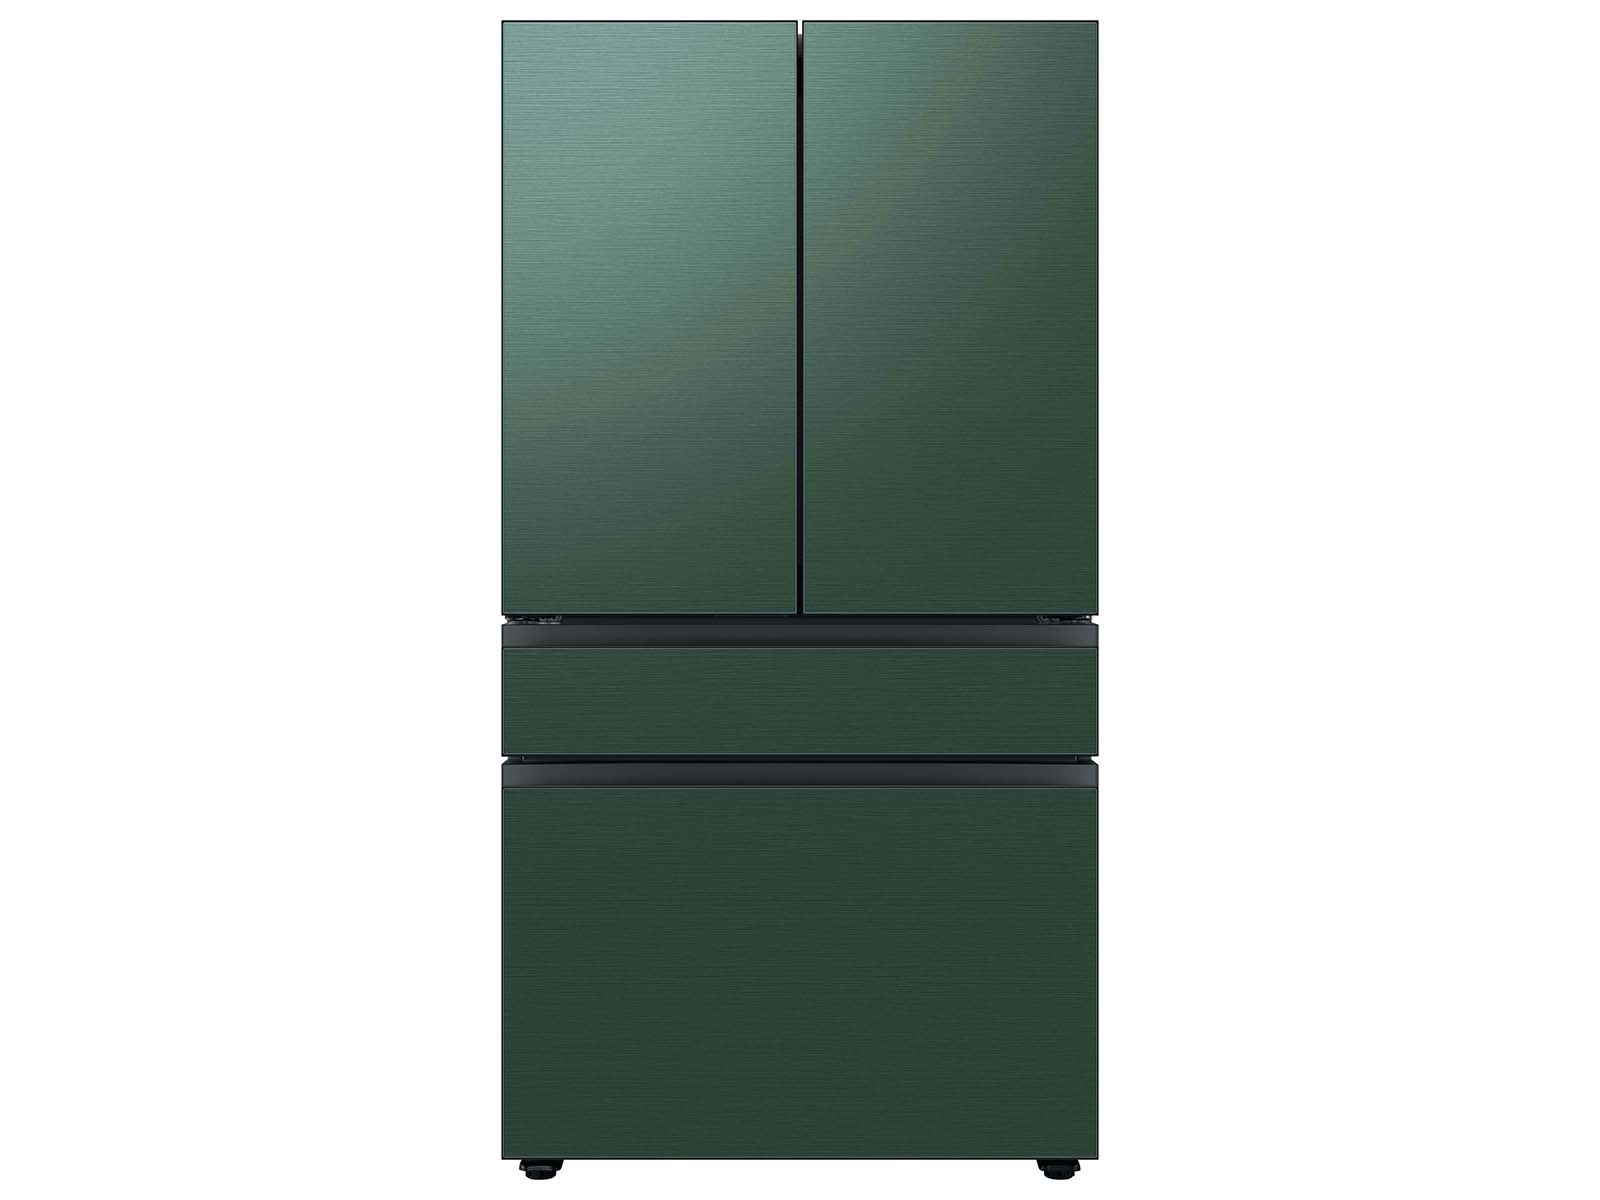 Bespoke 4-Door French Door Refrigerator (29 cu. ft.) with Customizable Door Panel Colors and Beverage Center&trade; in Emerald Green Steel